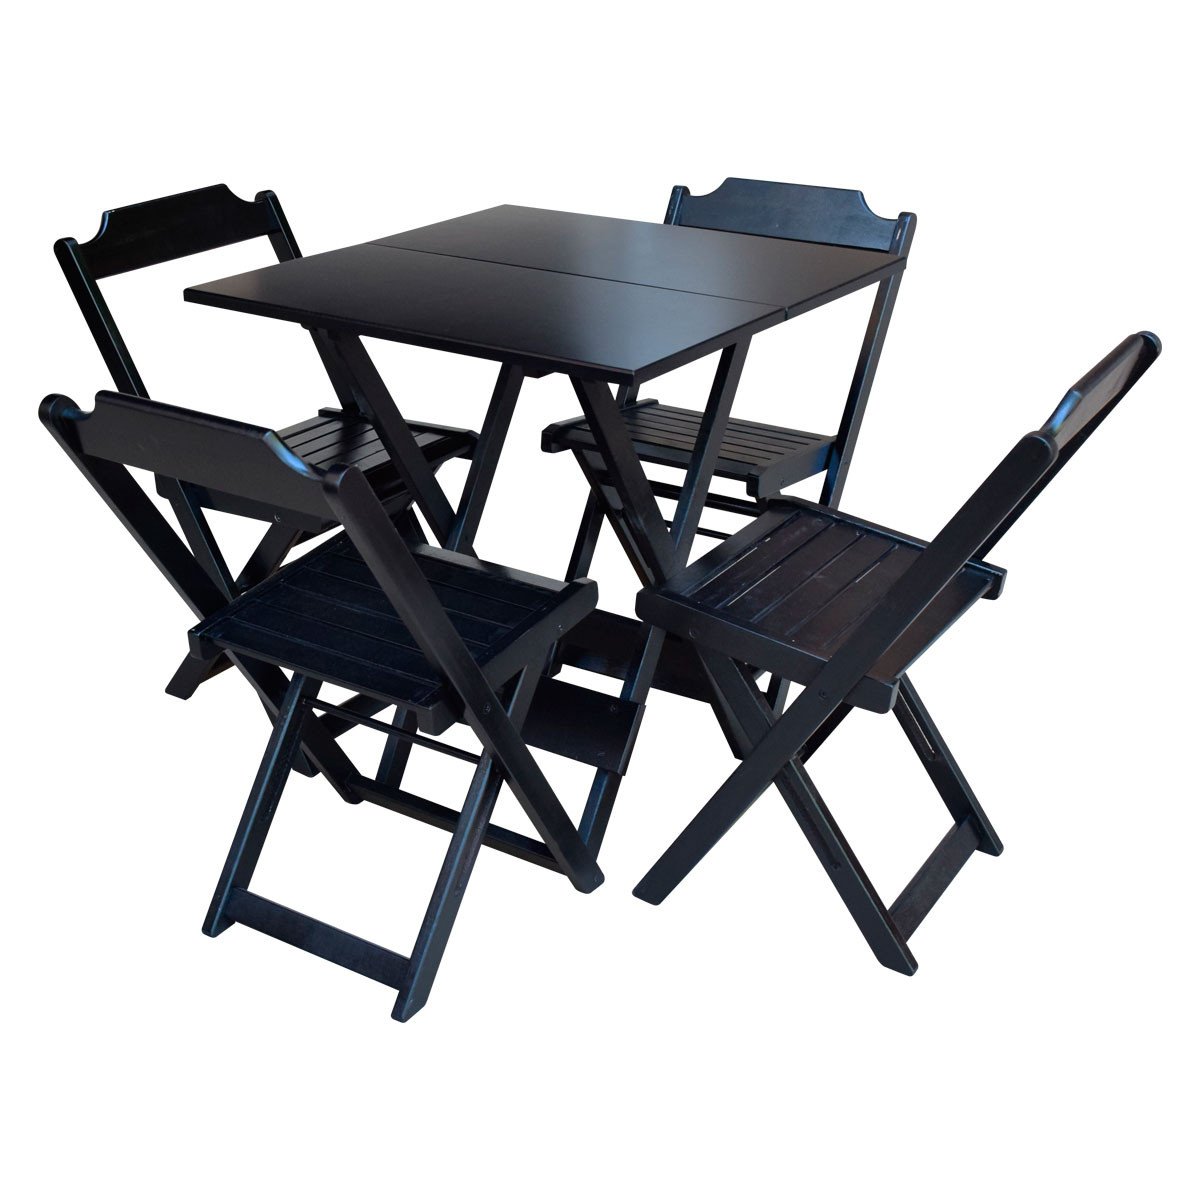 Kit 5 Jogos de Mesa Dobravel com 4 Cadeiras de Madeira 70x70 para Restaurante e Bar - Preto - 2